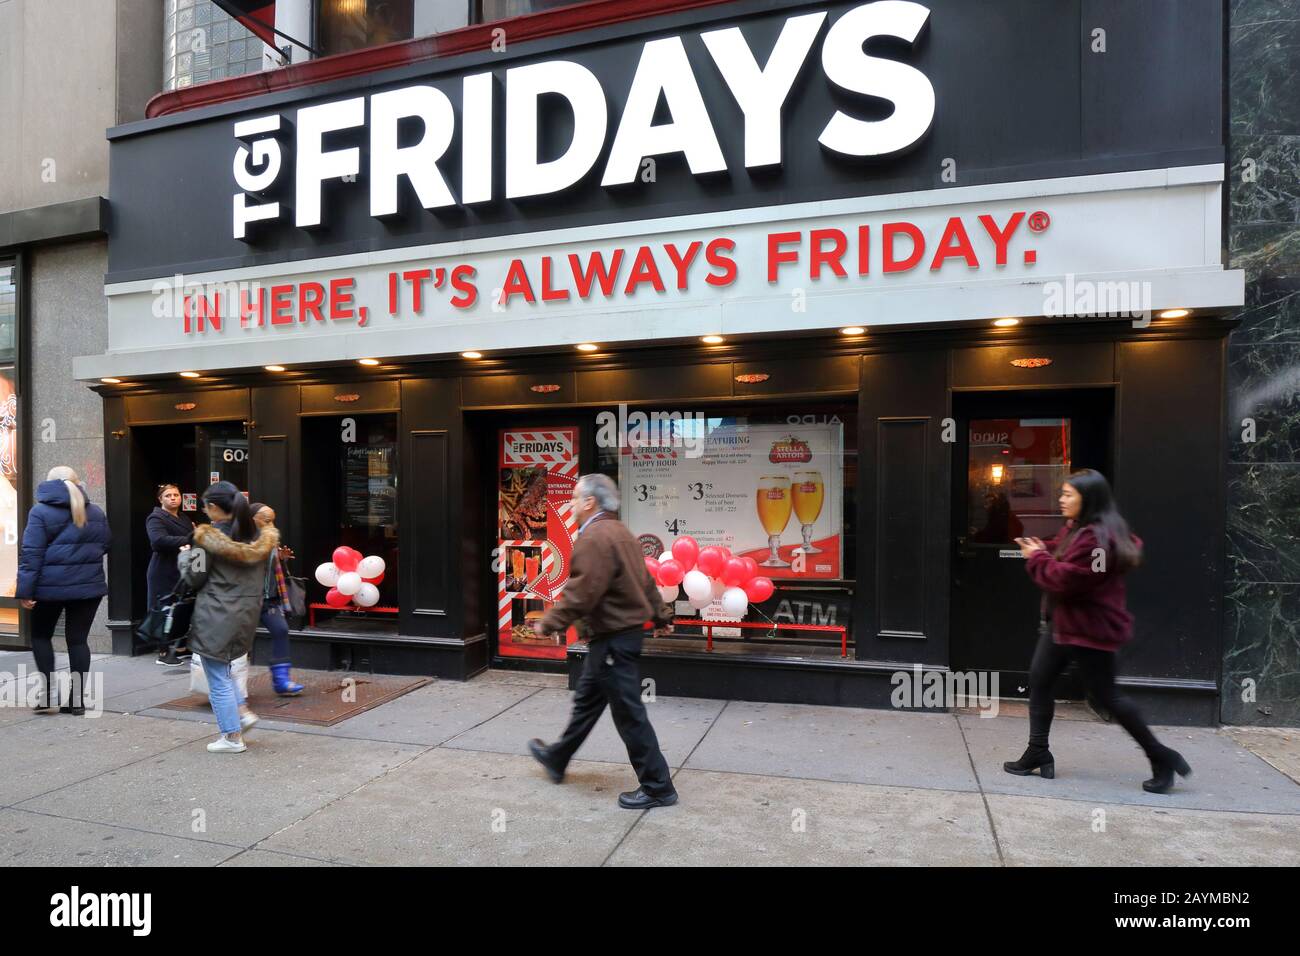 La gente caminando pasando un restaurante temático de la cadena TGI Fridays happy hour en 604 5th Ave en Midtown Manhattan, Nueva York, NY. Foto de stock